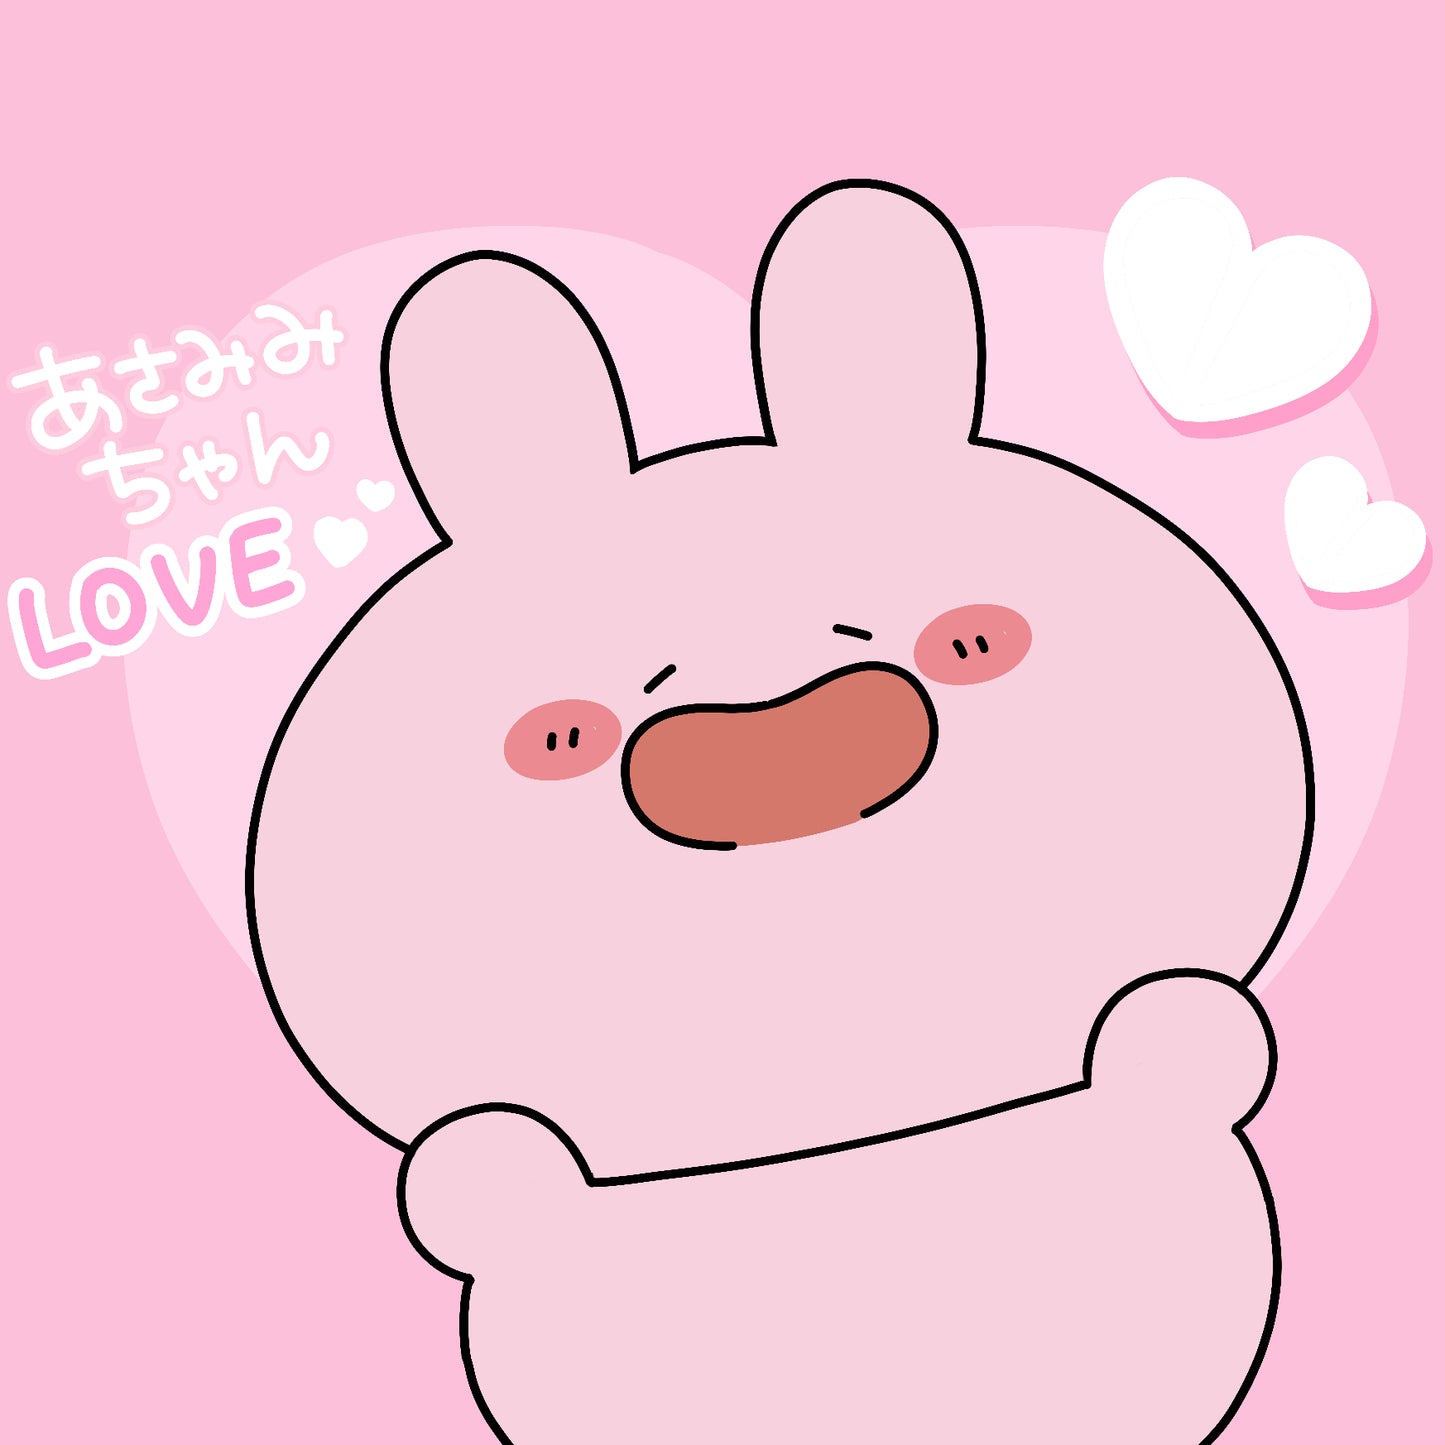 [Asamimi-chan] Heart fan